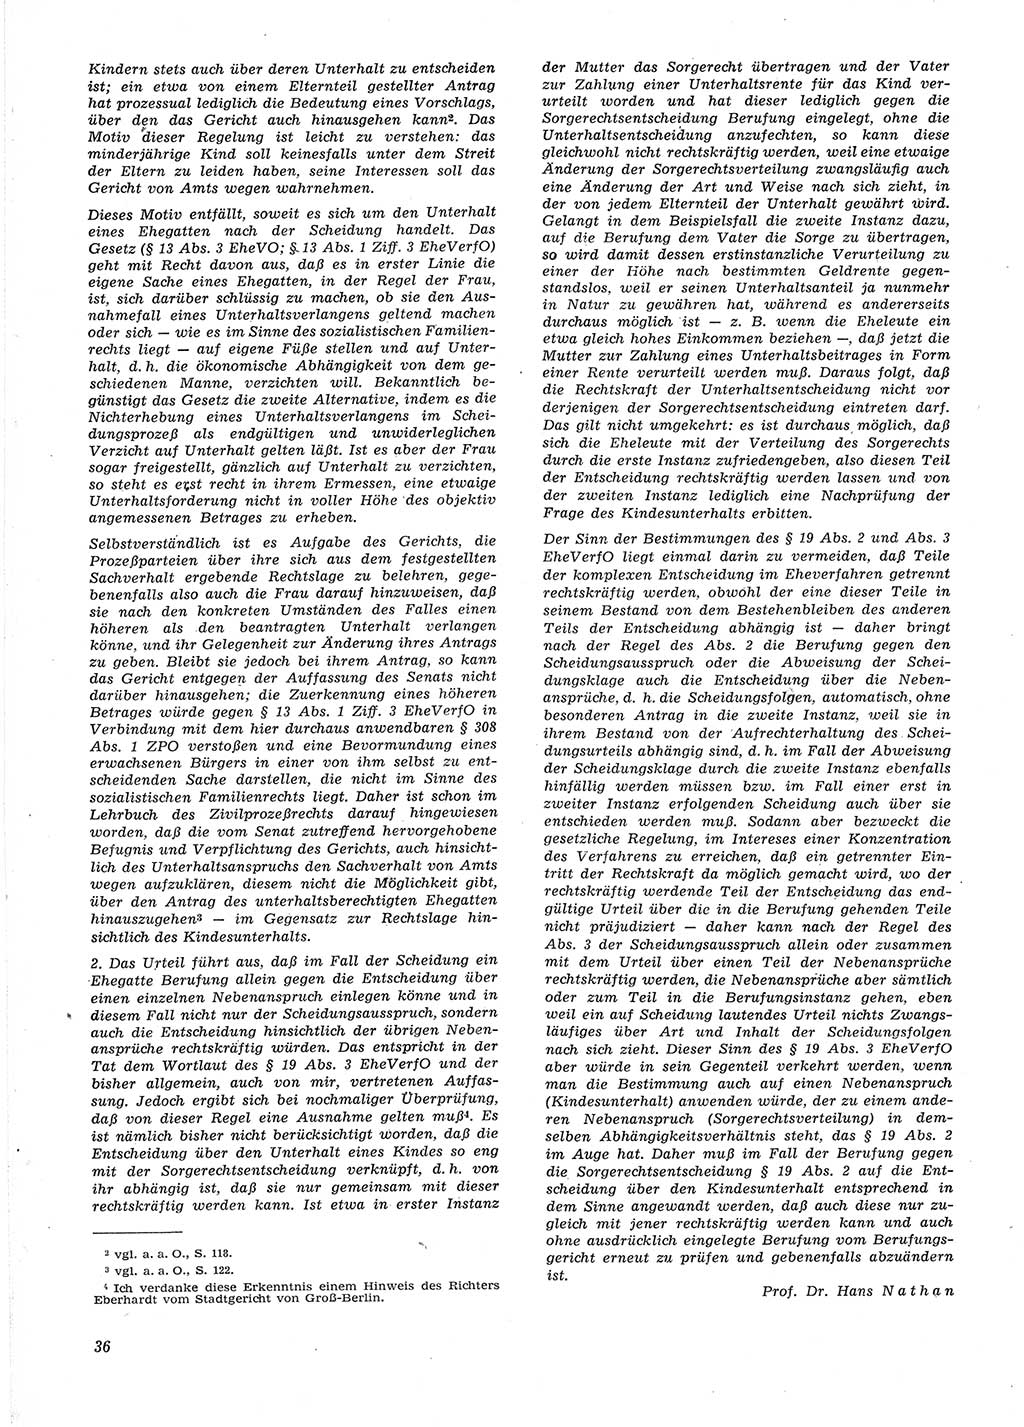 Neue Justiz (NJ), Zeitschrift für Recht und Rechtswissenschaft [Deutsche Demokratische Republik (DDR)], 15. Jahrgang 1961, Seite 36 (NJ DDR 1961, S. 36)